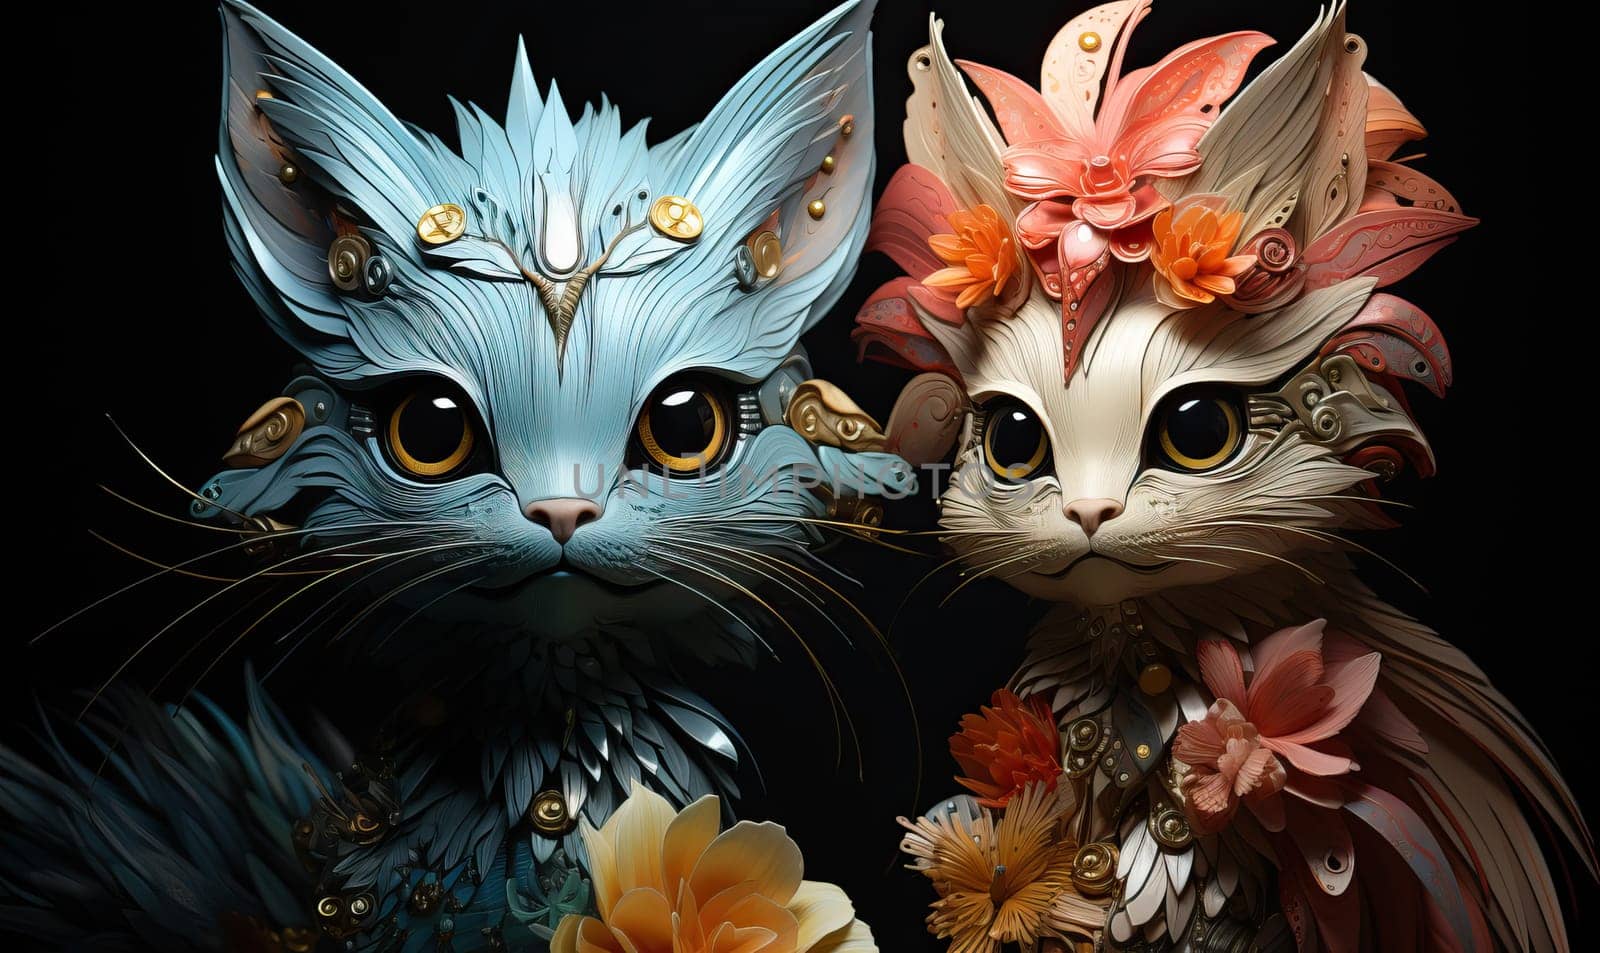 Fantasy cats on a dark background. by Fischeron